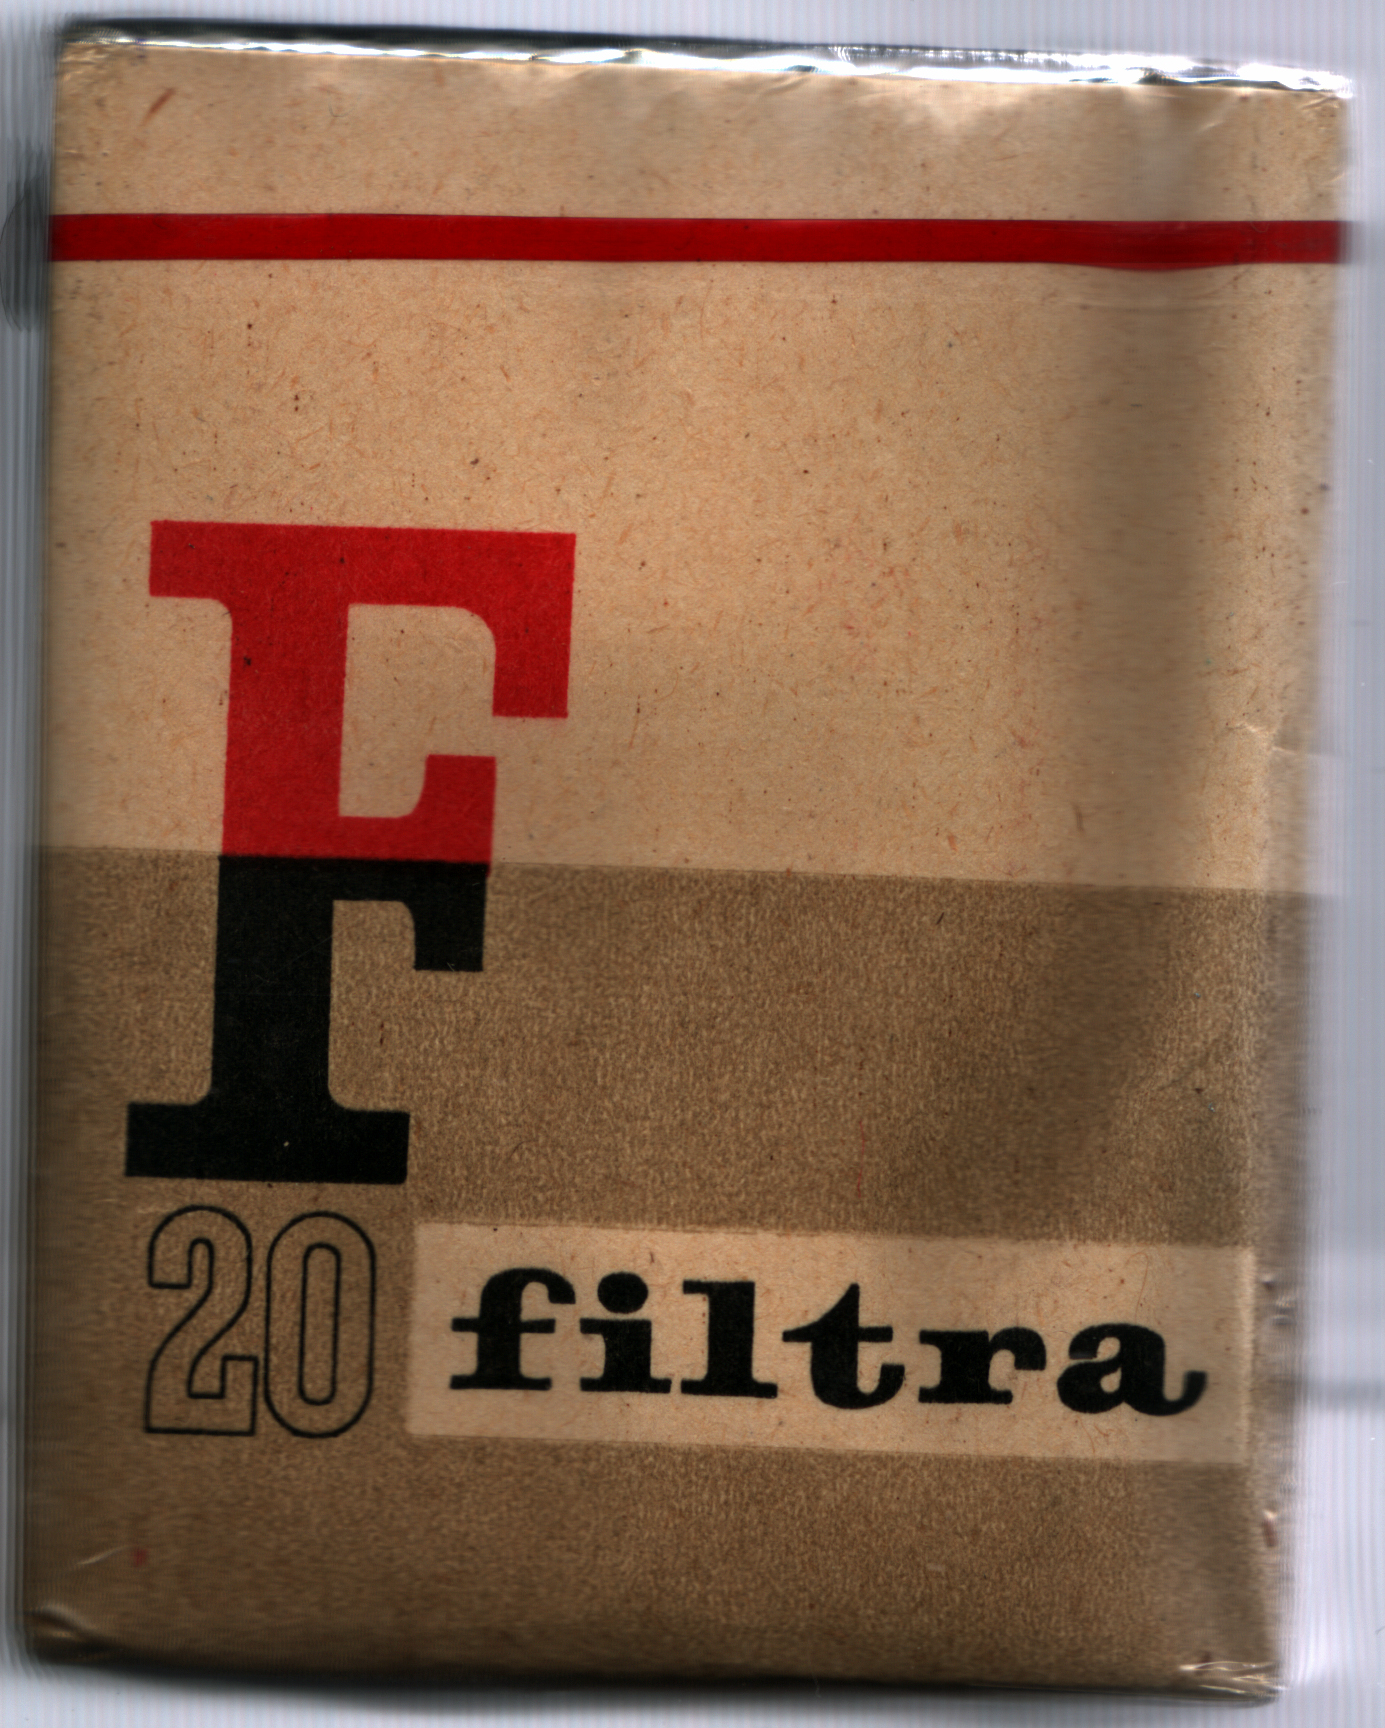 Filtra.jpg